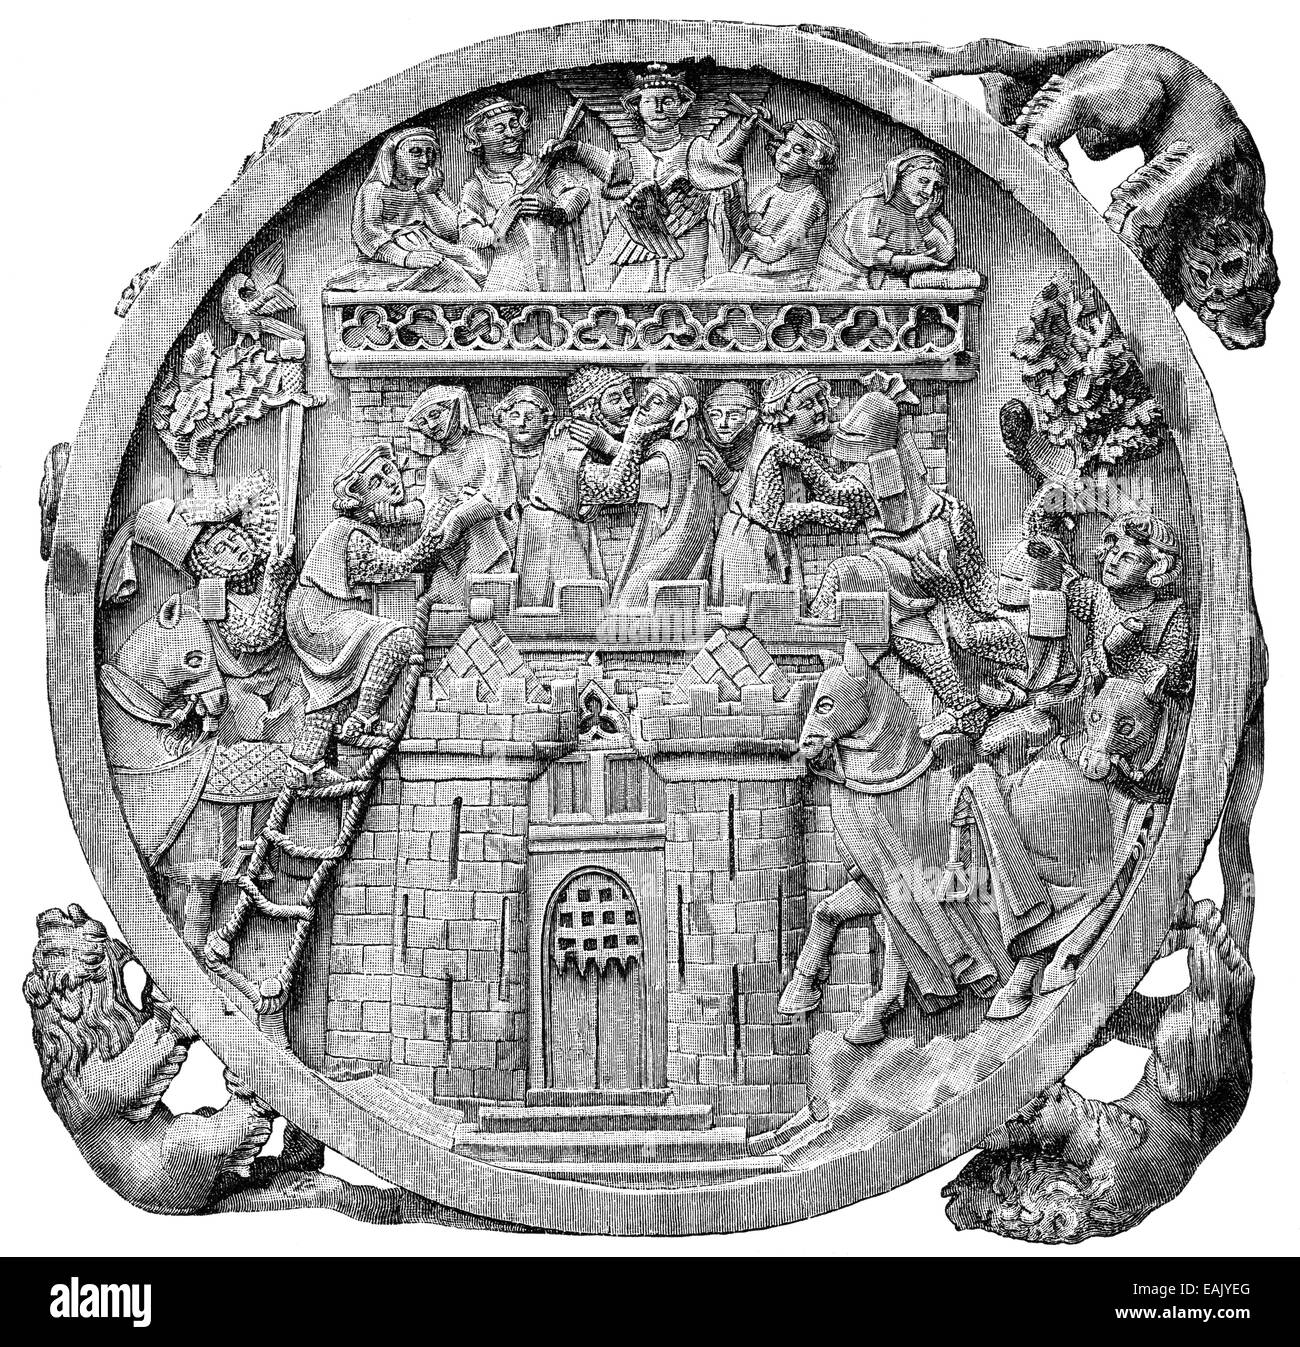 ivory carving, 14th century, storming of Minneburg Castle, Darstellung einer Elfenbeinschnitzerei aus dem 14. Jahrhundert, Erstü Stock Photo